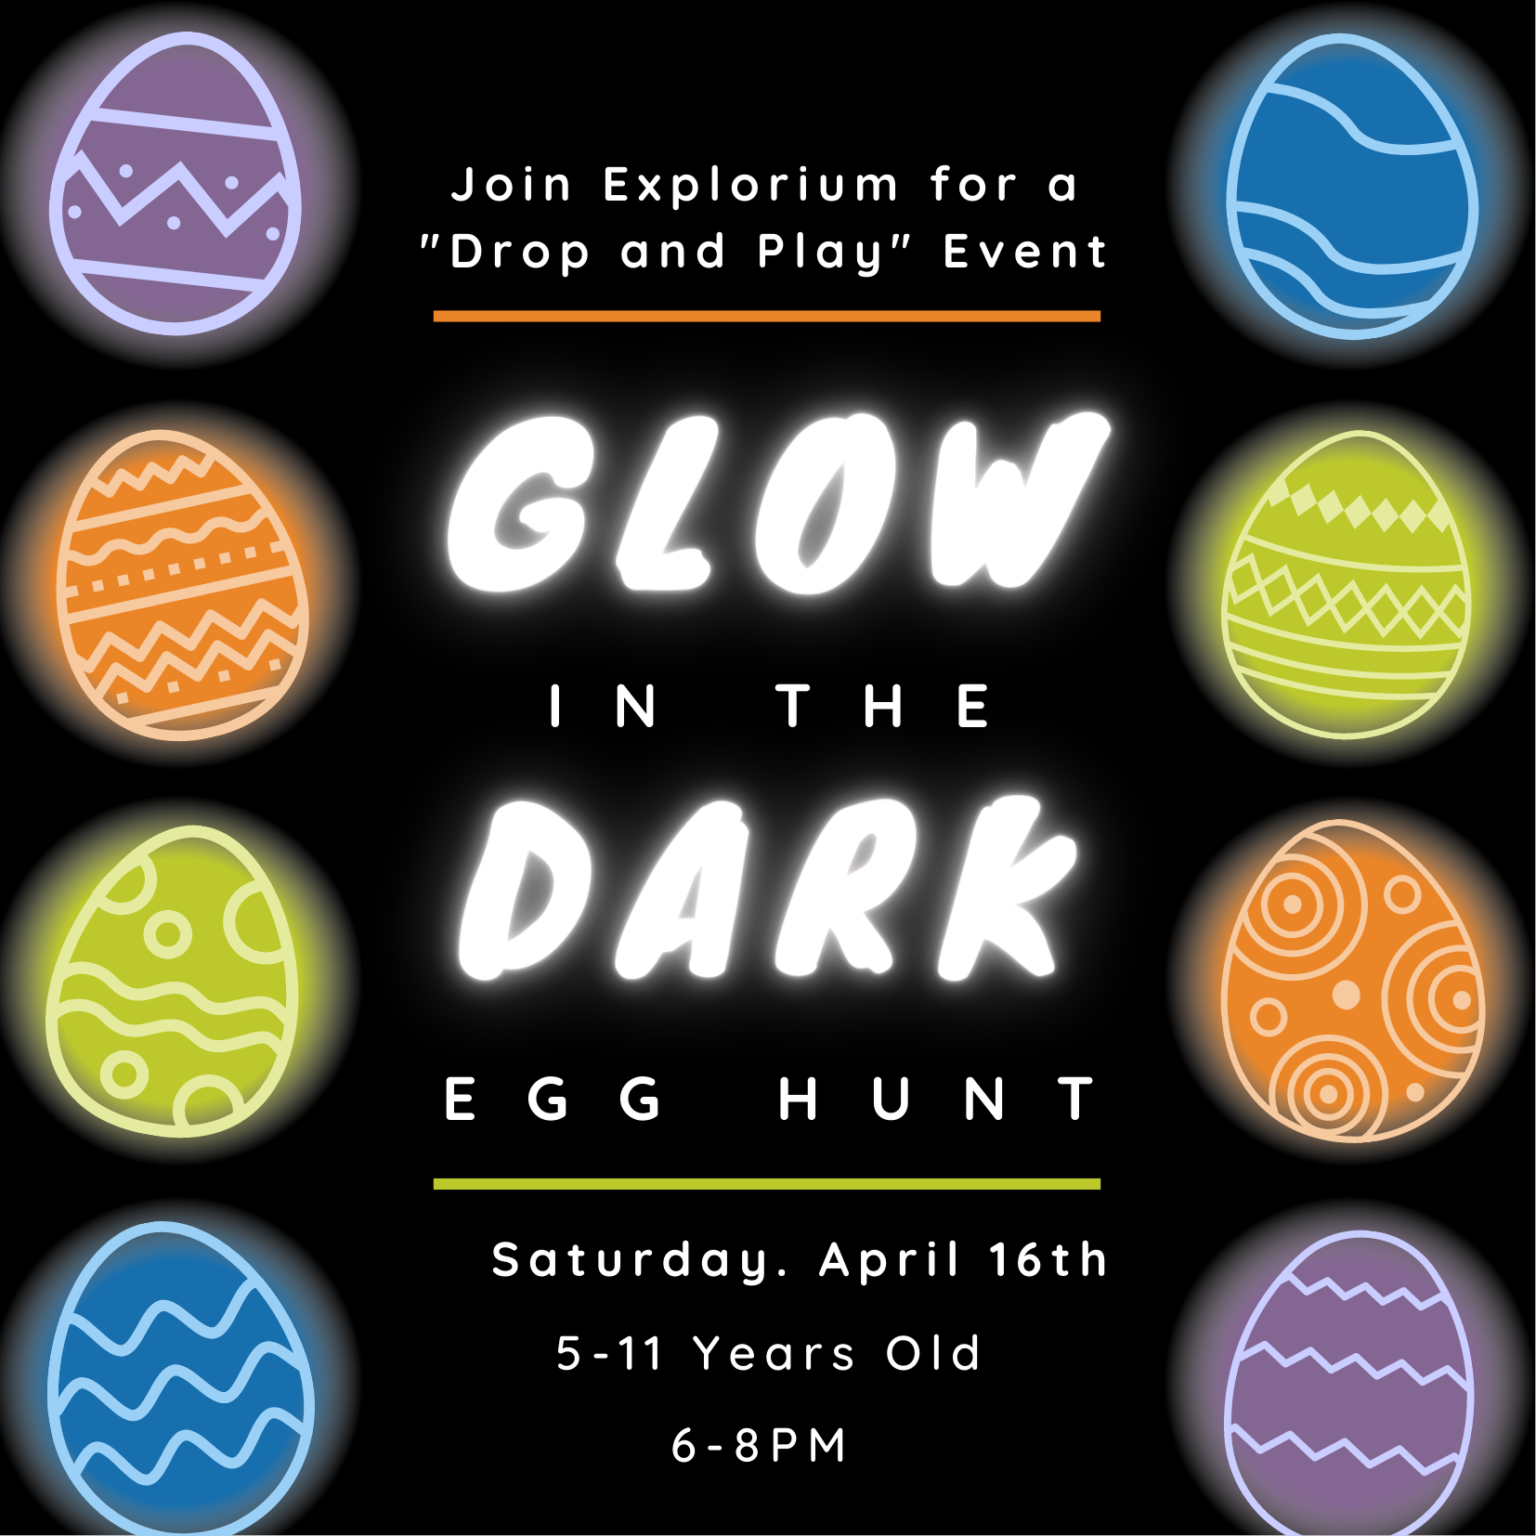 Glow in the Dark Egg Hunt Explorium